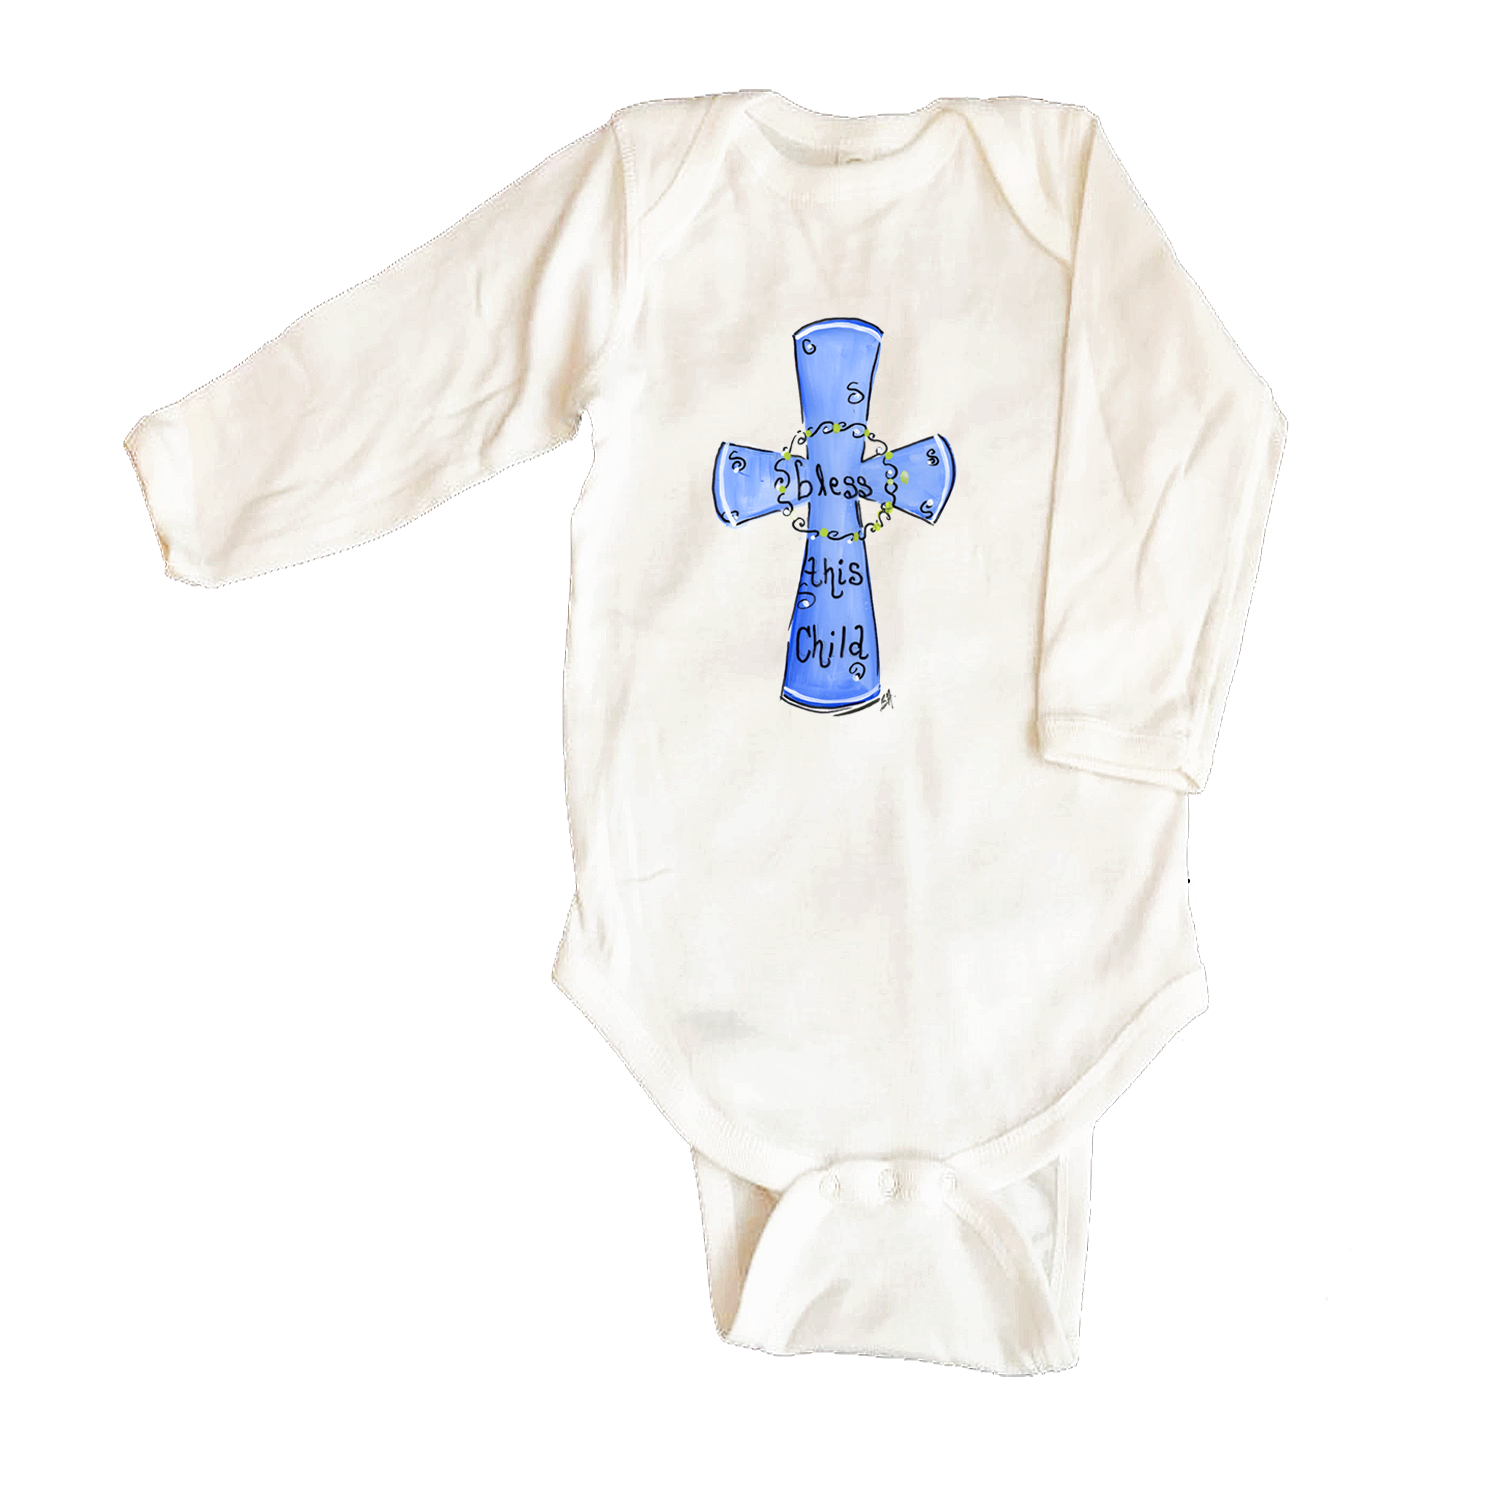 Bodysuit Long Sleeve 1066 Blue-Bless this Child Cross